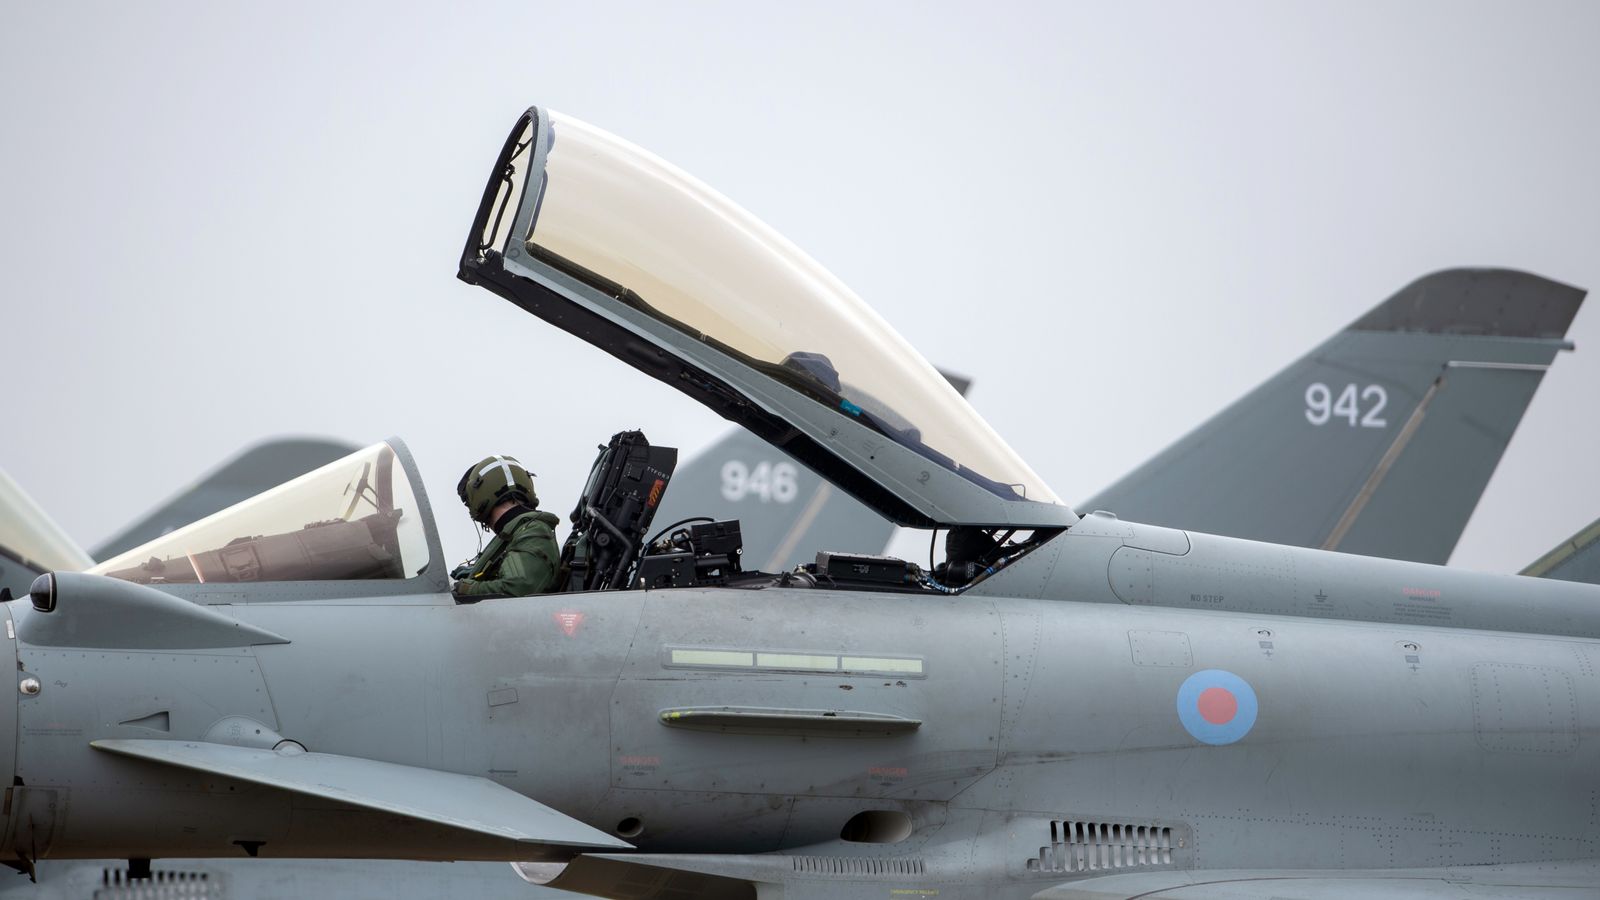 L’addestramento dei piloti ucraini potrebbe influire sulla capacità della RAF di insegnare alle reclute britanniche, afferma il capo dell’aeronautica in arrivo News UK